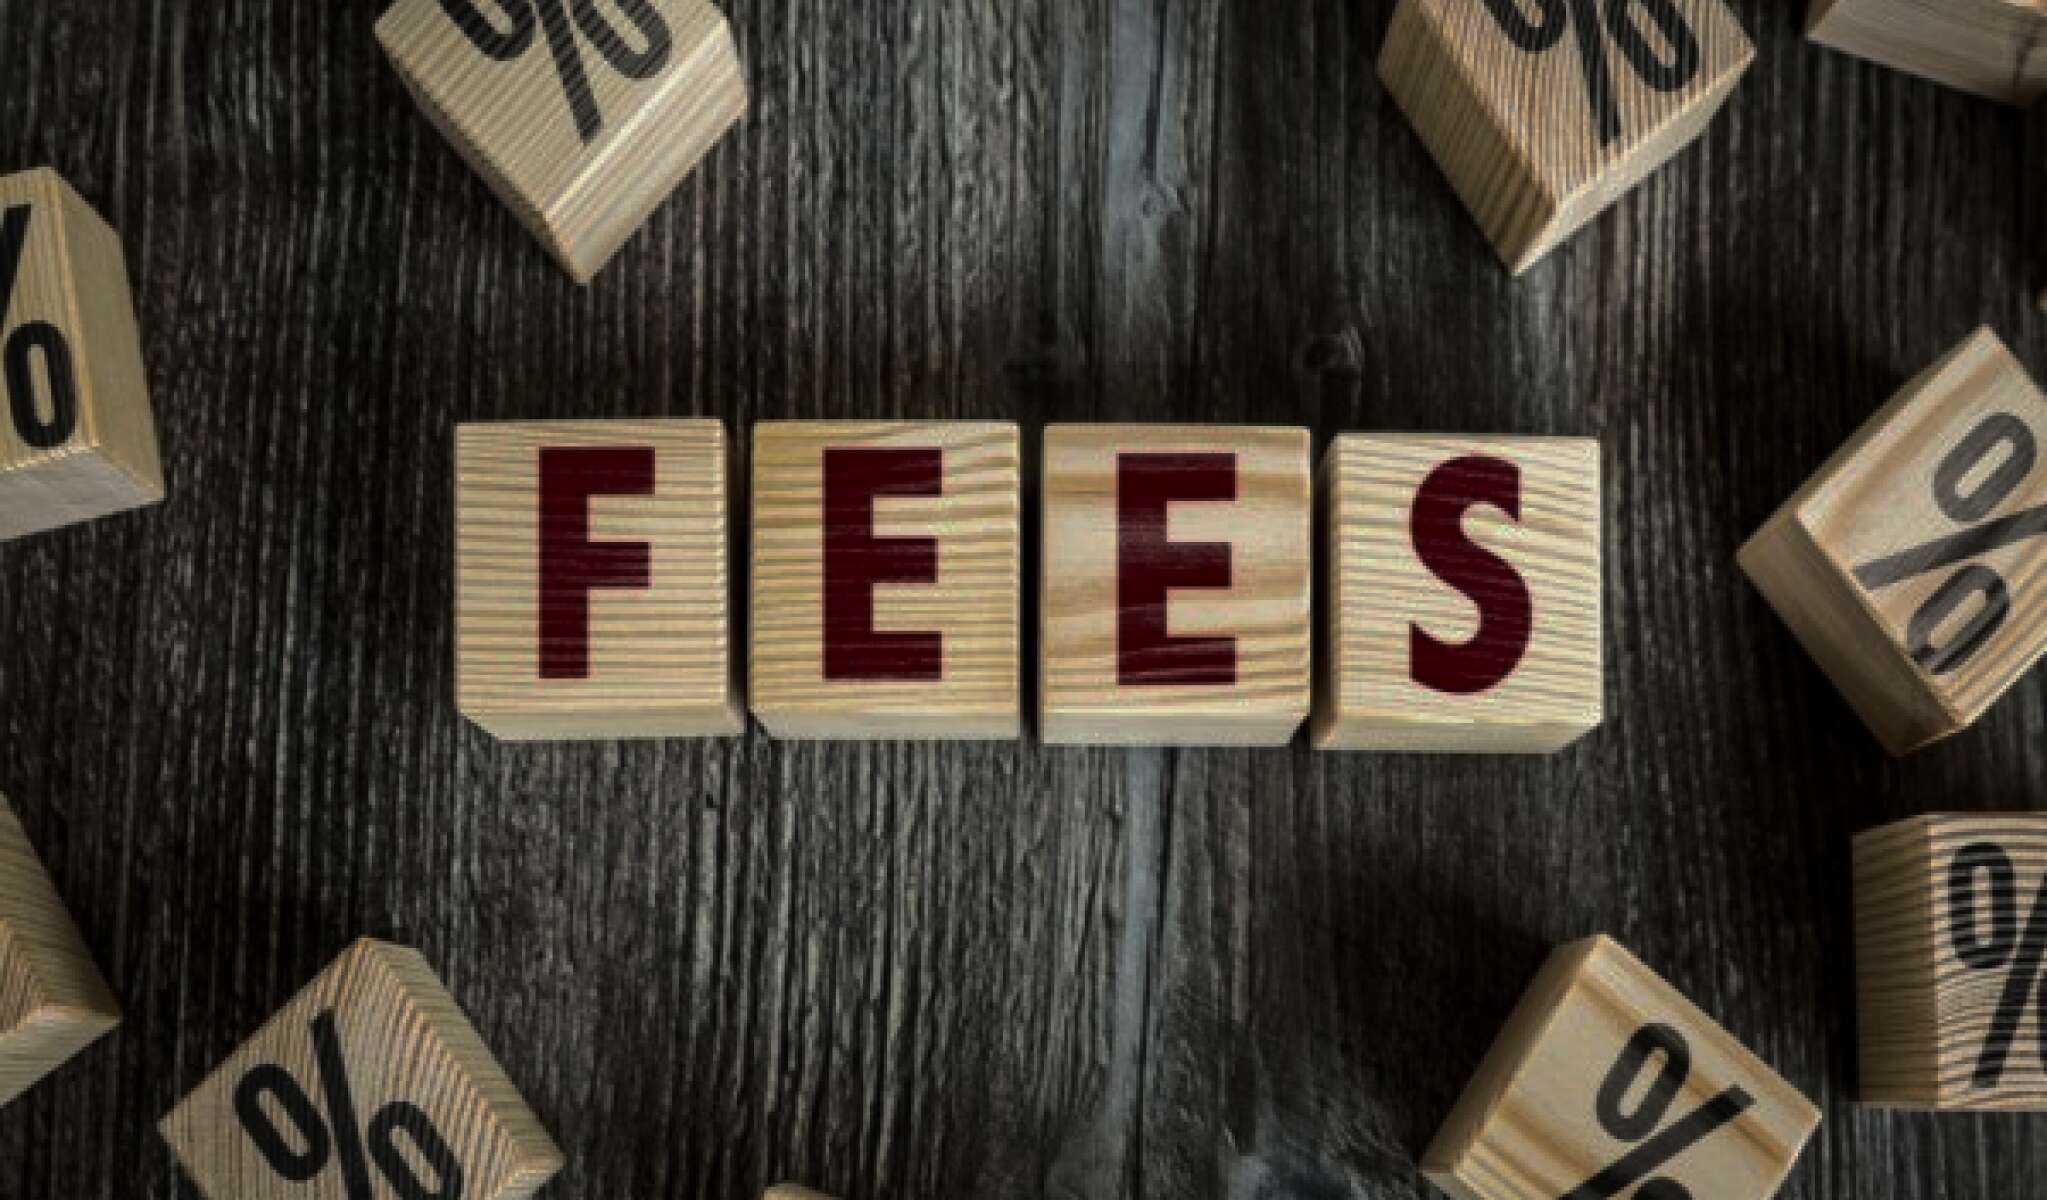 ovedraft fees, paydaylenders